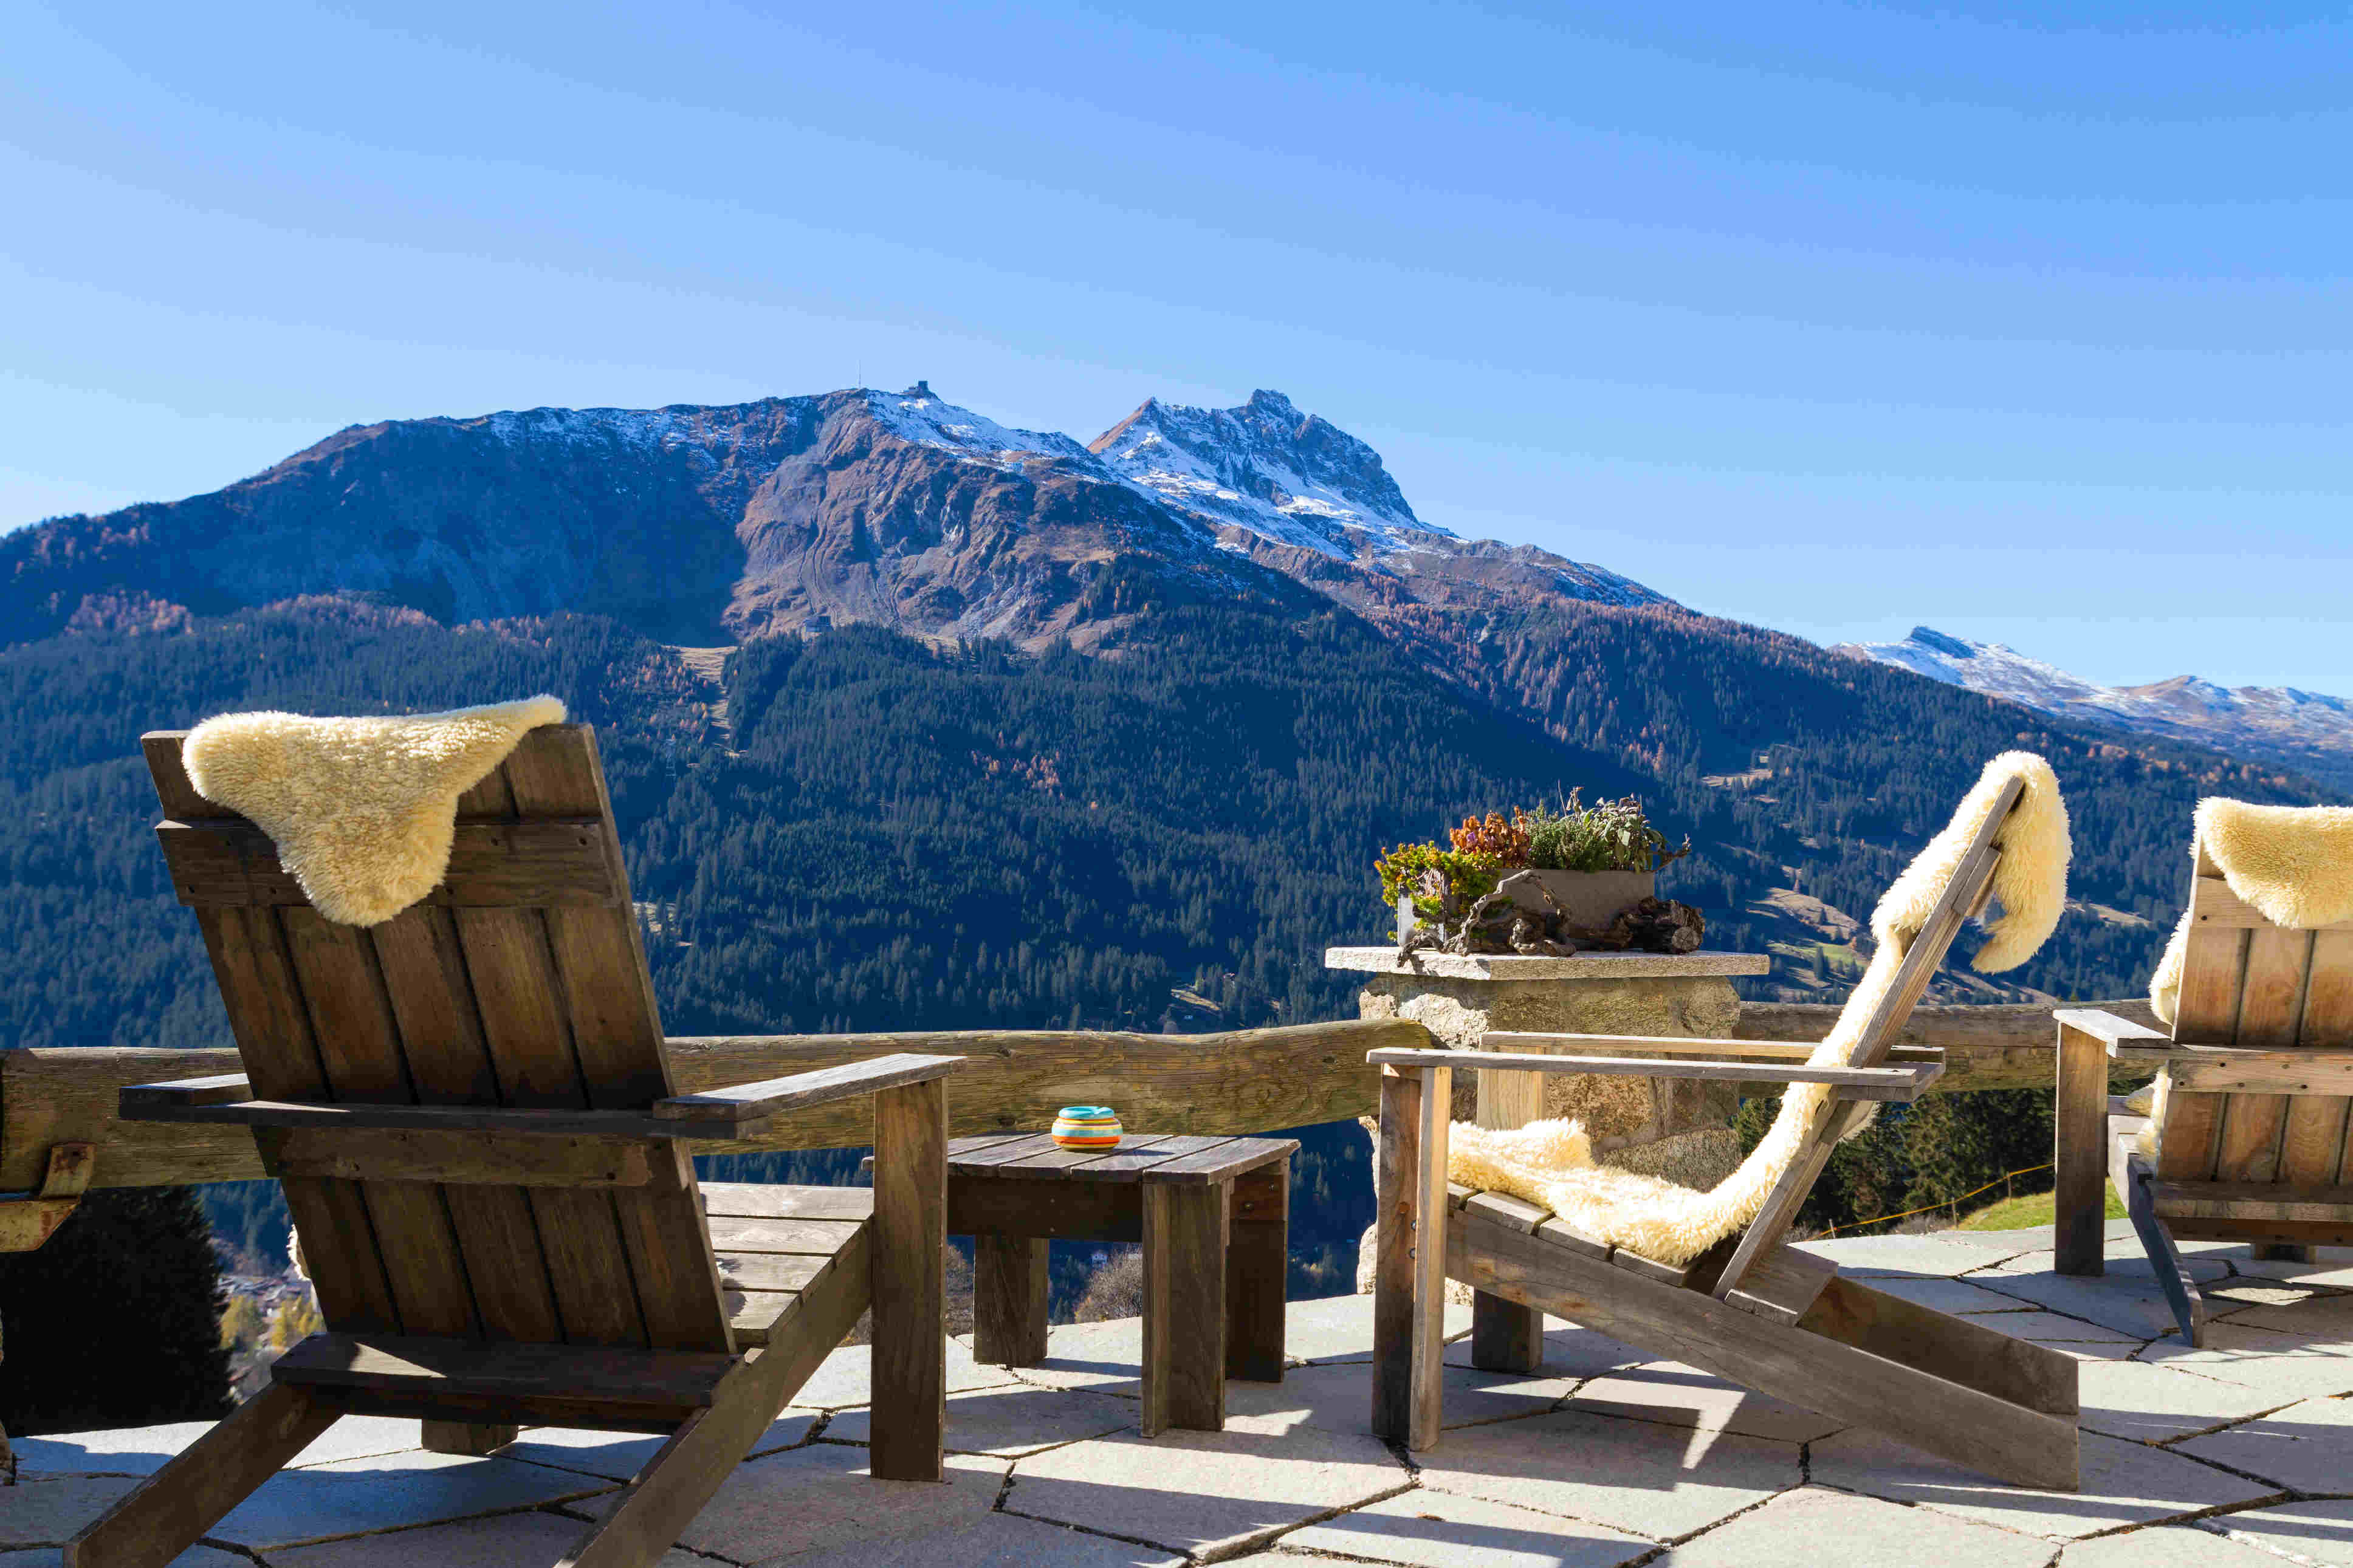 Betreiber für Alpe in Top Tourismusdestination gesucht Bild 0